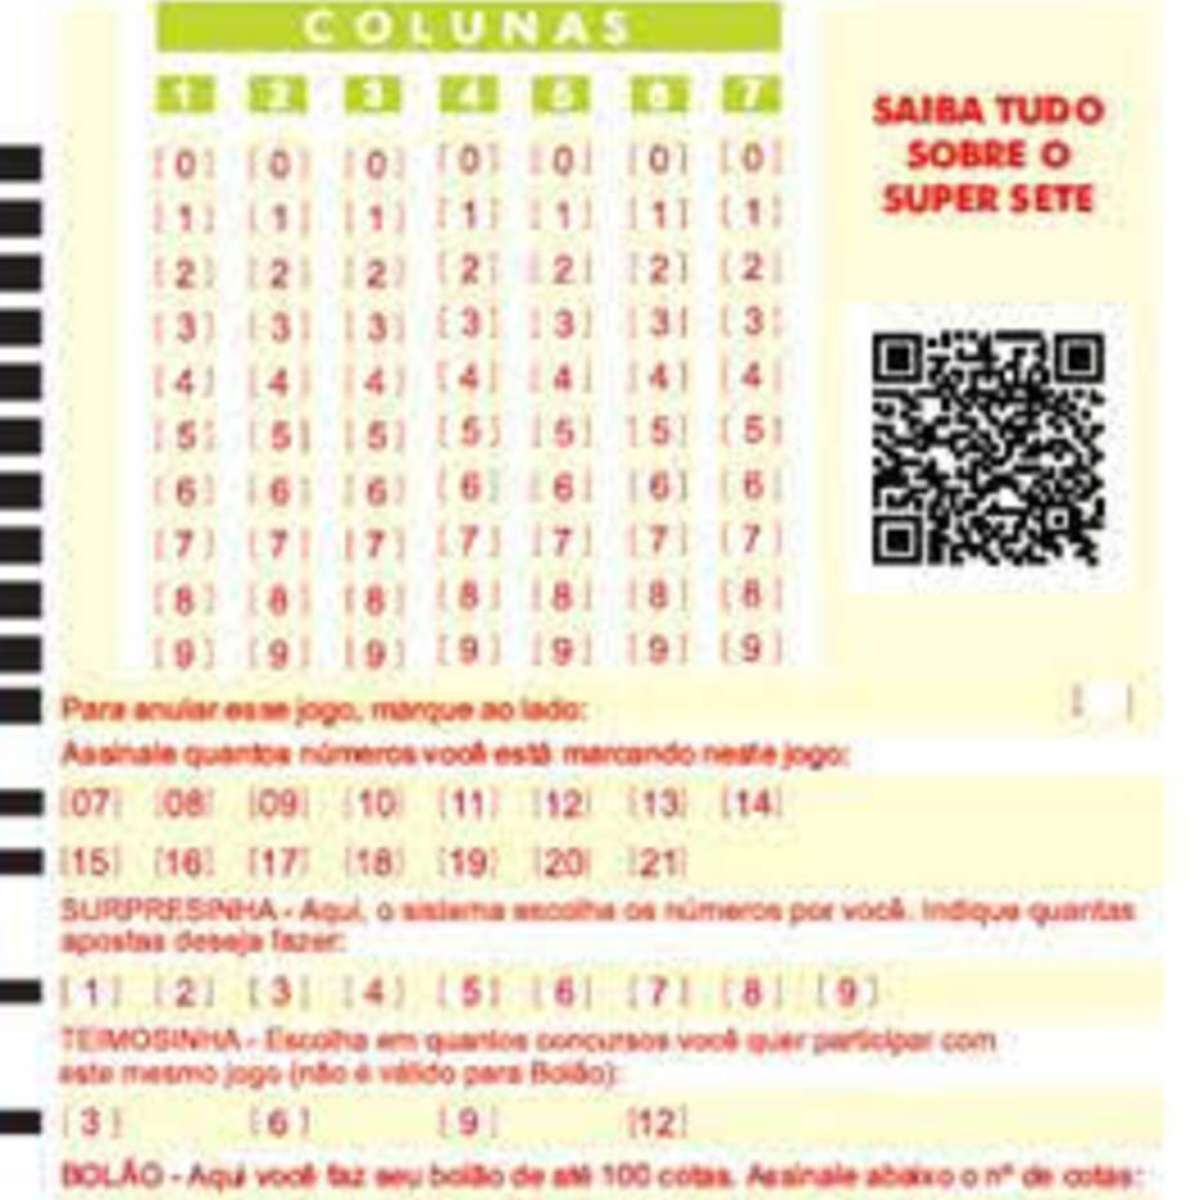 Caixa Econômica lança nova modalidade de loteria